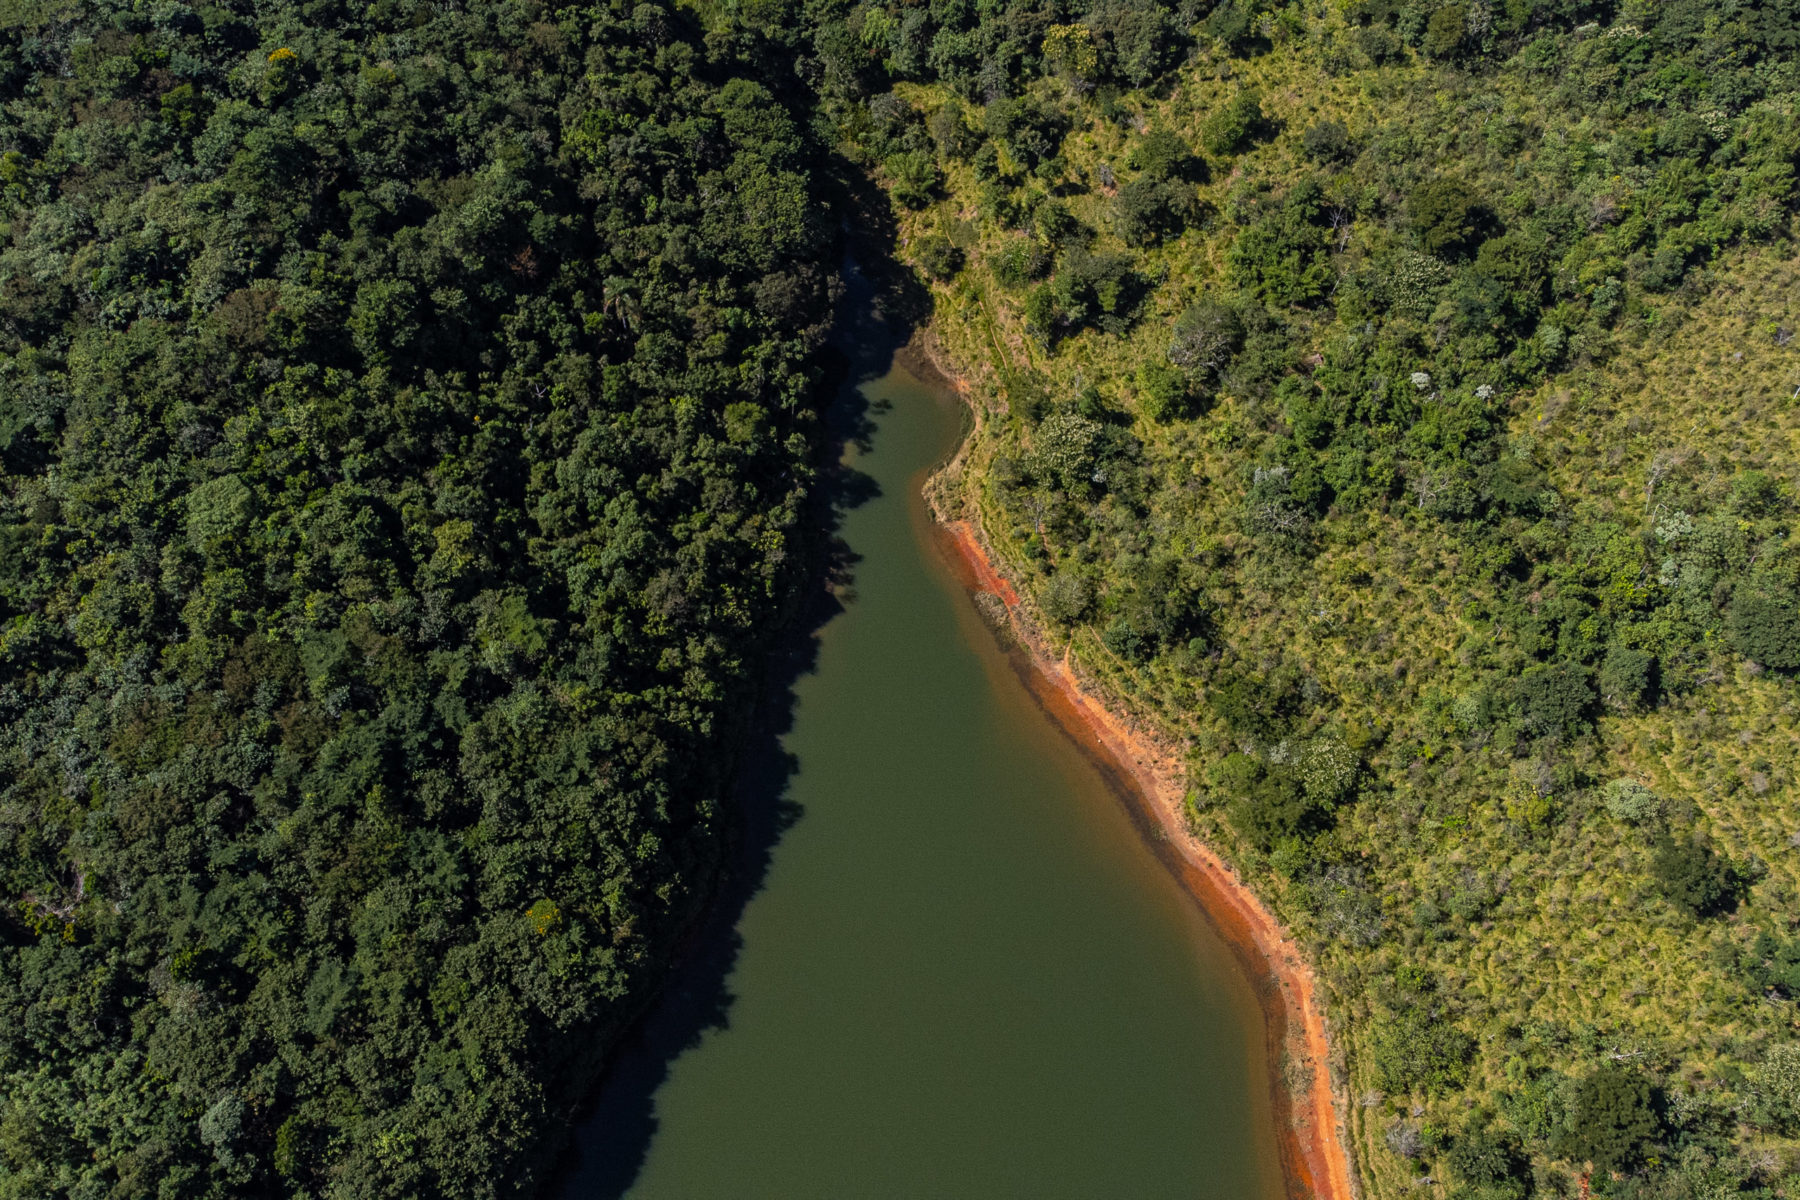 Waldgebiet in Brasilien. Rechts degradiert, links wiederaufgeforstet.
Foto: Lucas Ninno / Diálogo Chino
CC BY-NC-ND 4.0